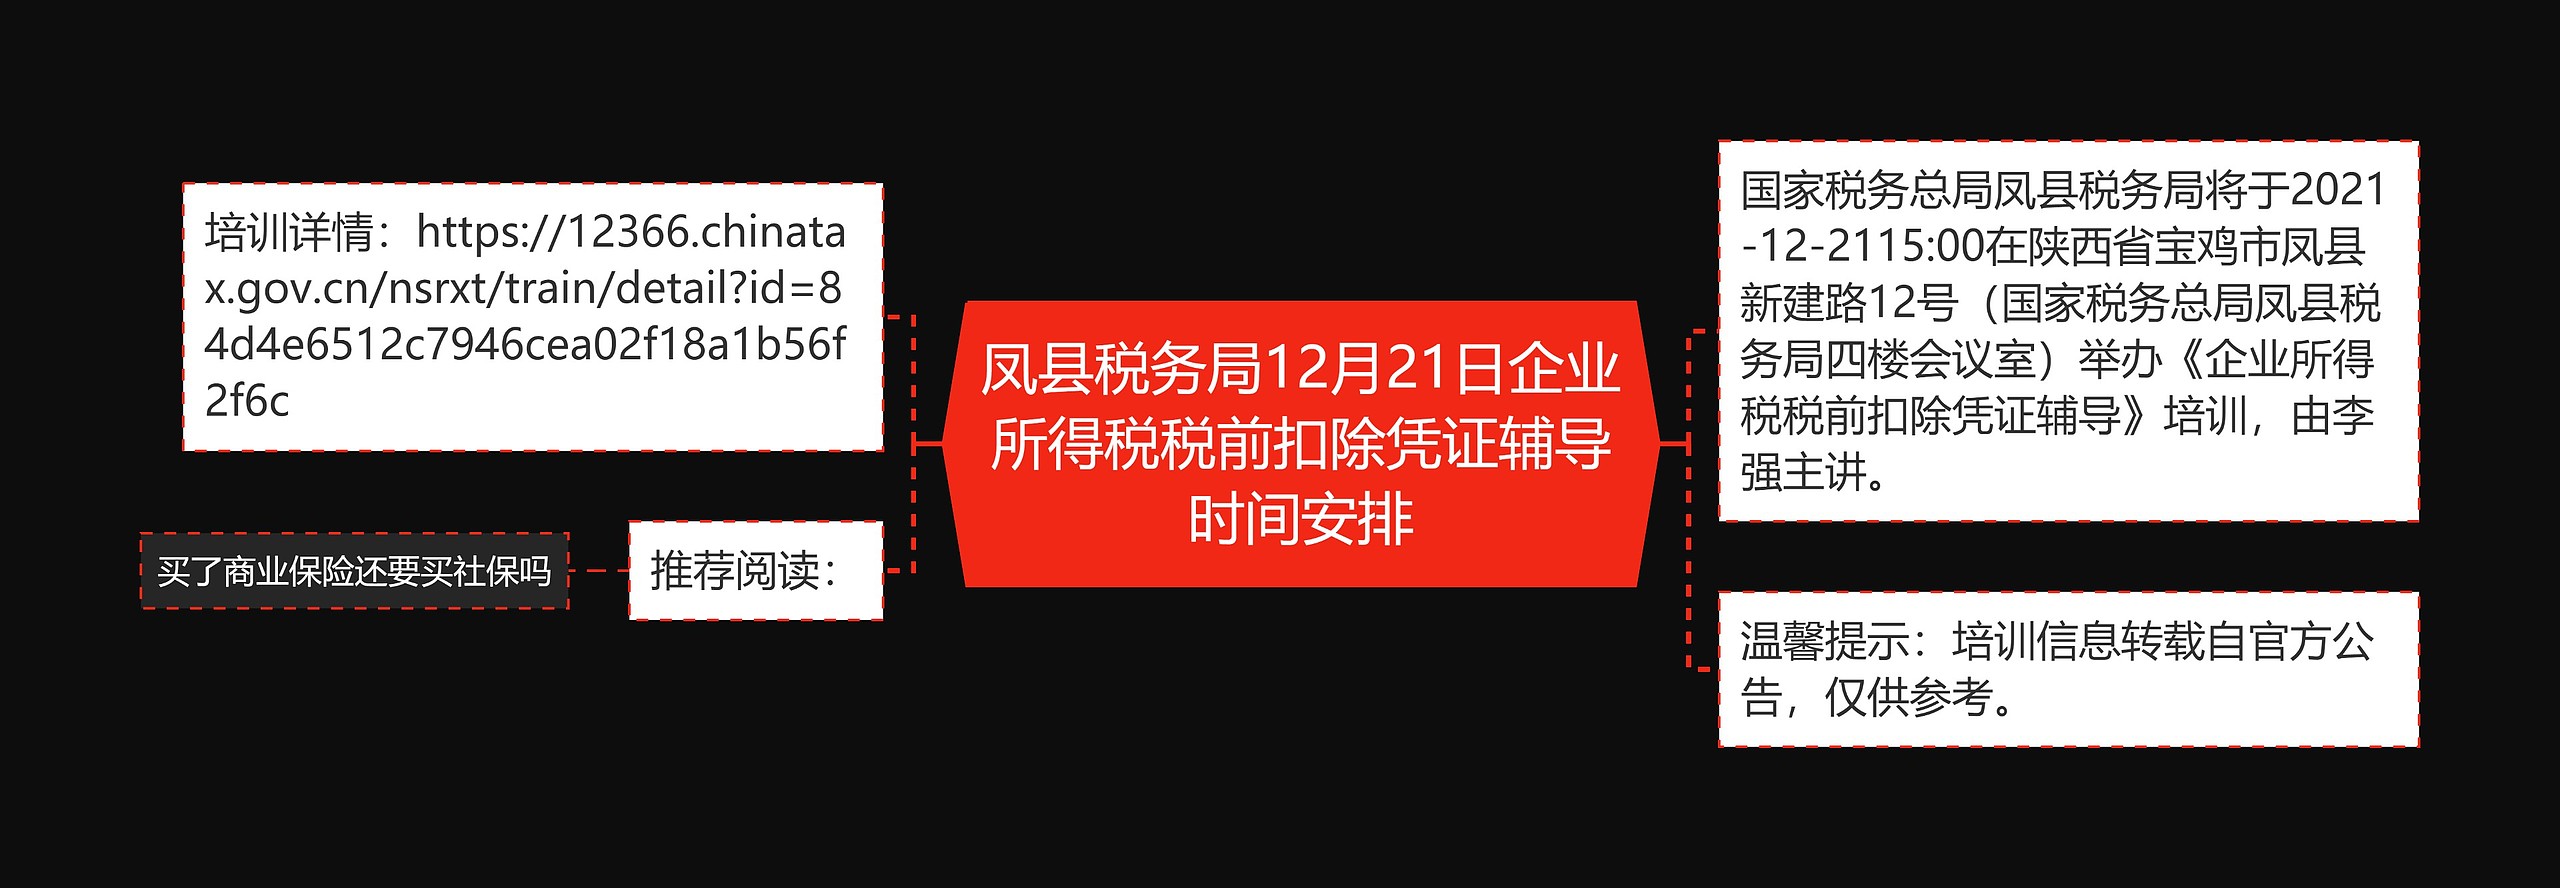 凤县税务局12月21日企业所得税税前扣除凭证辅导时间安排